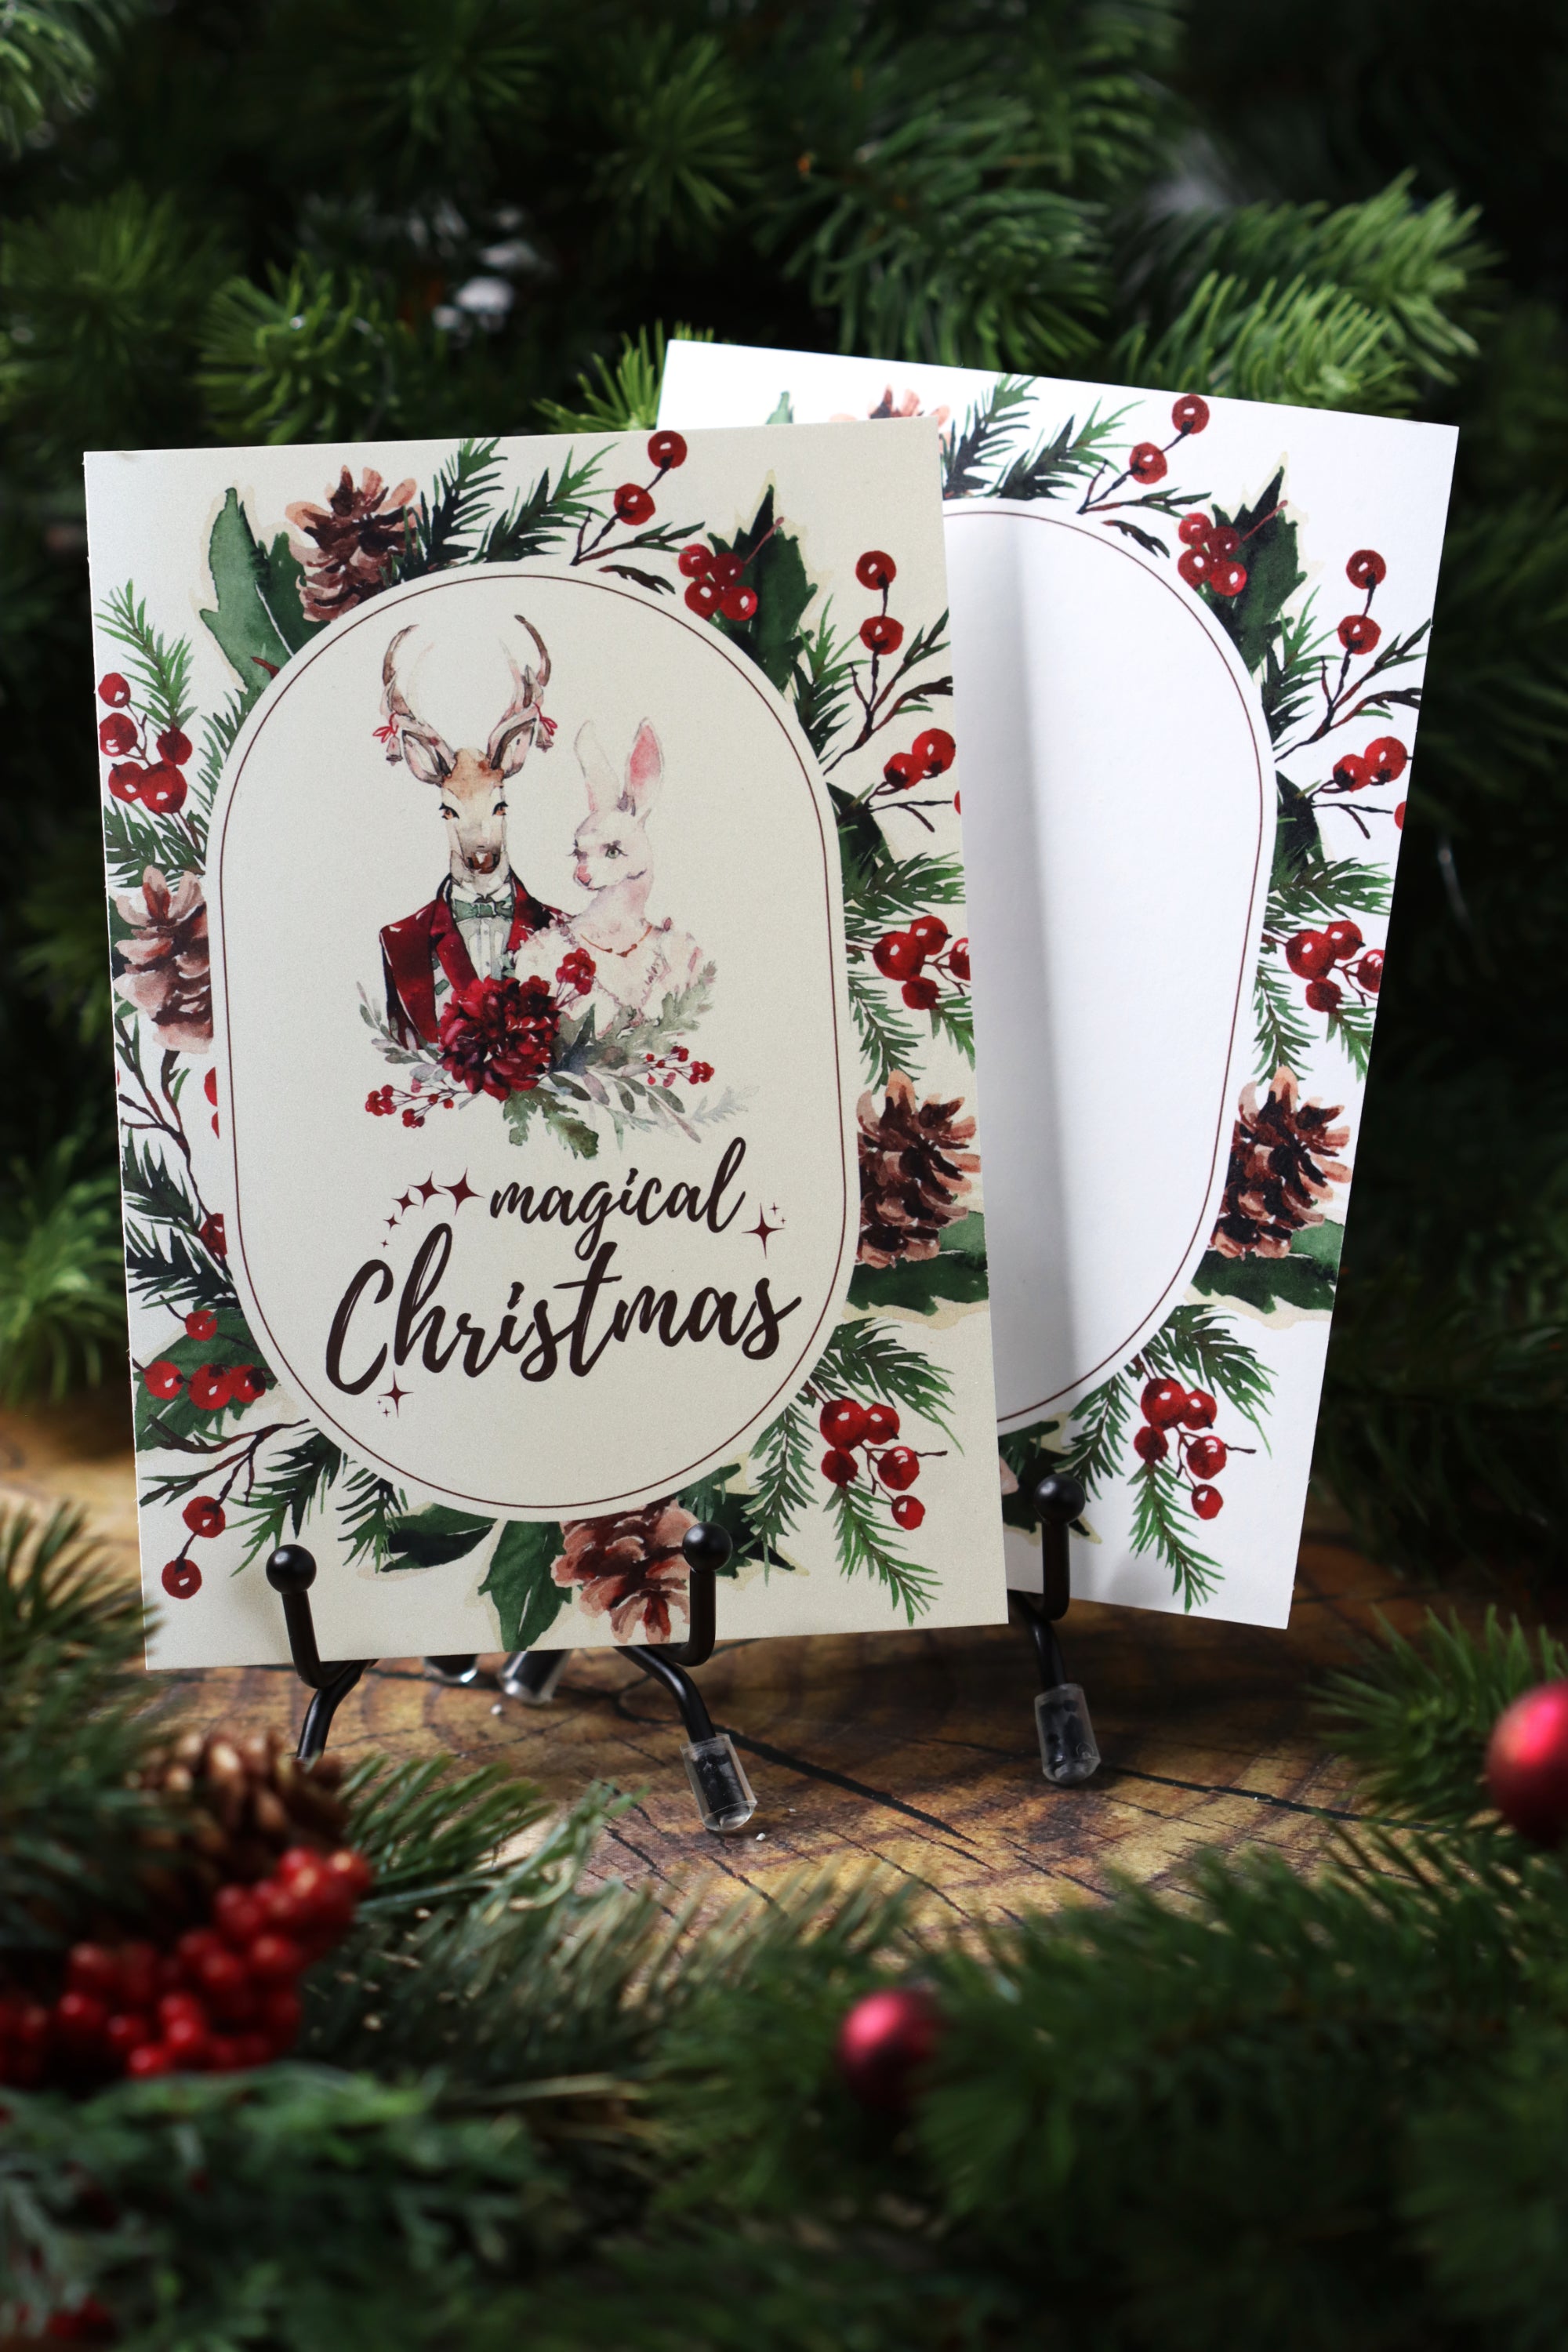 Postkarte Magical Christmas